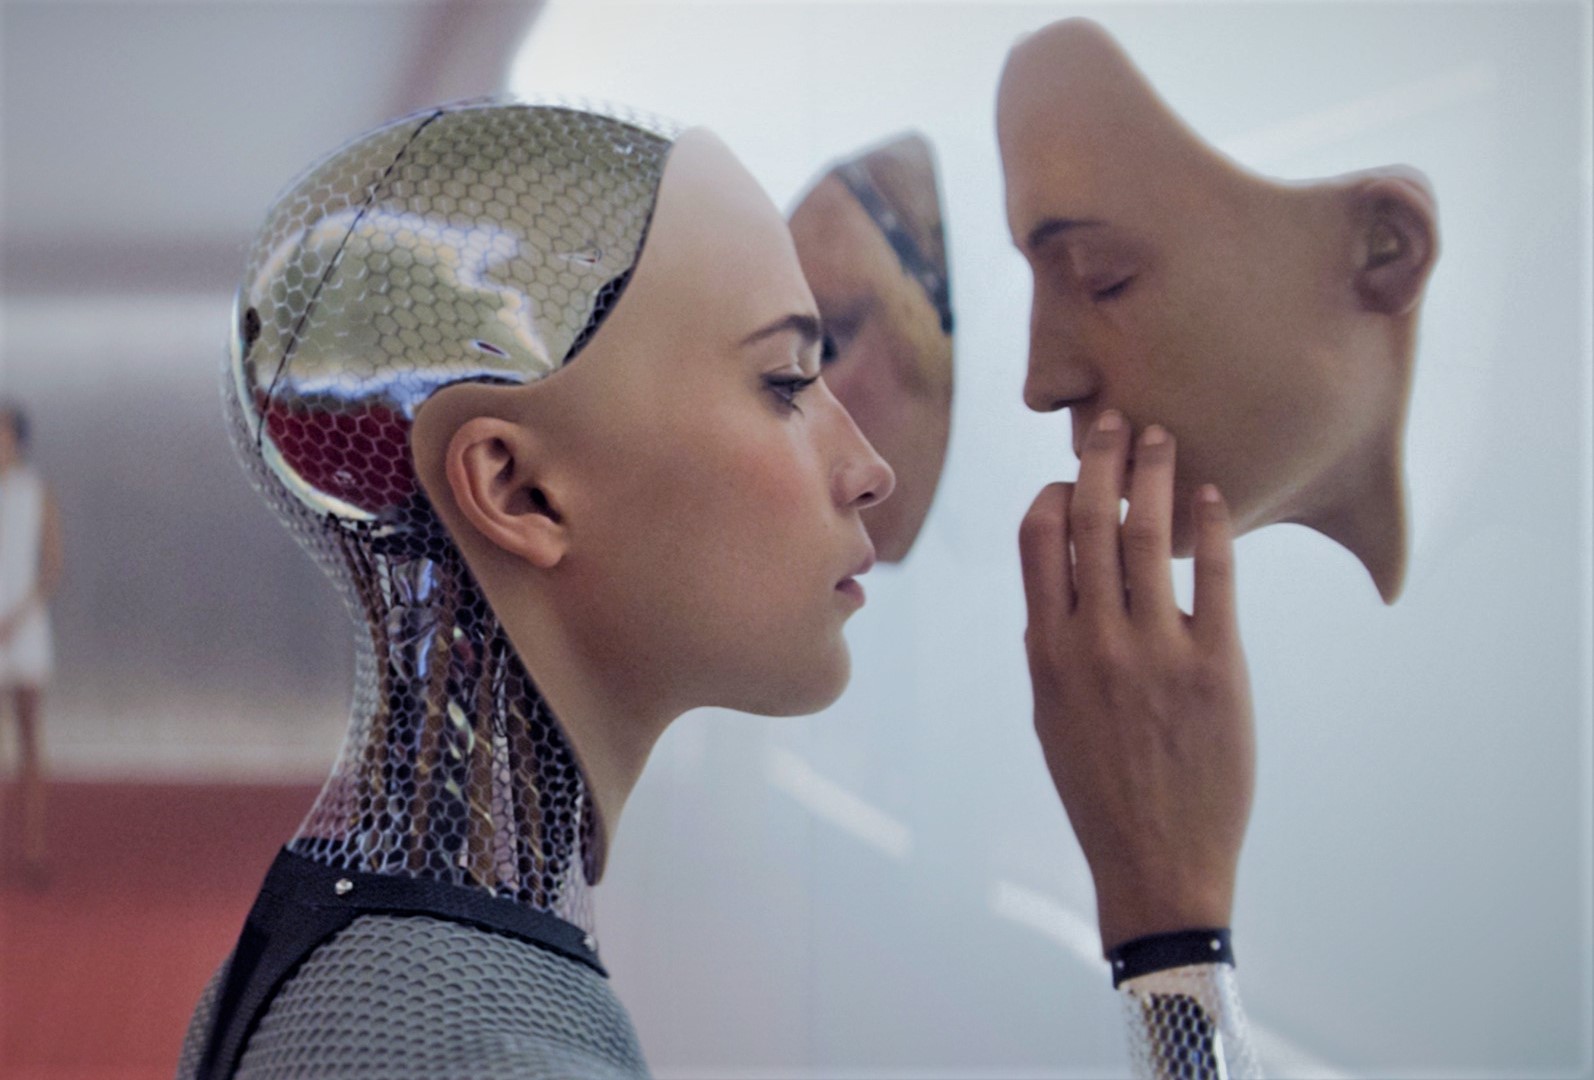 La Inteligencia Artificial permitirá a los robots sentir (Video)